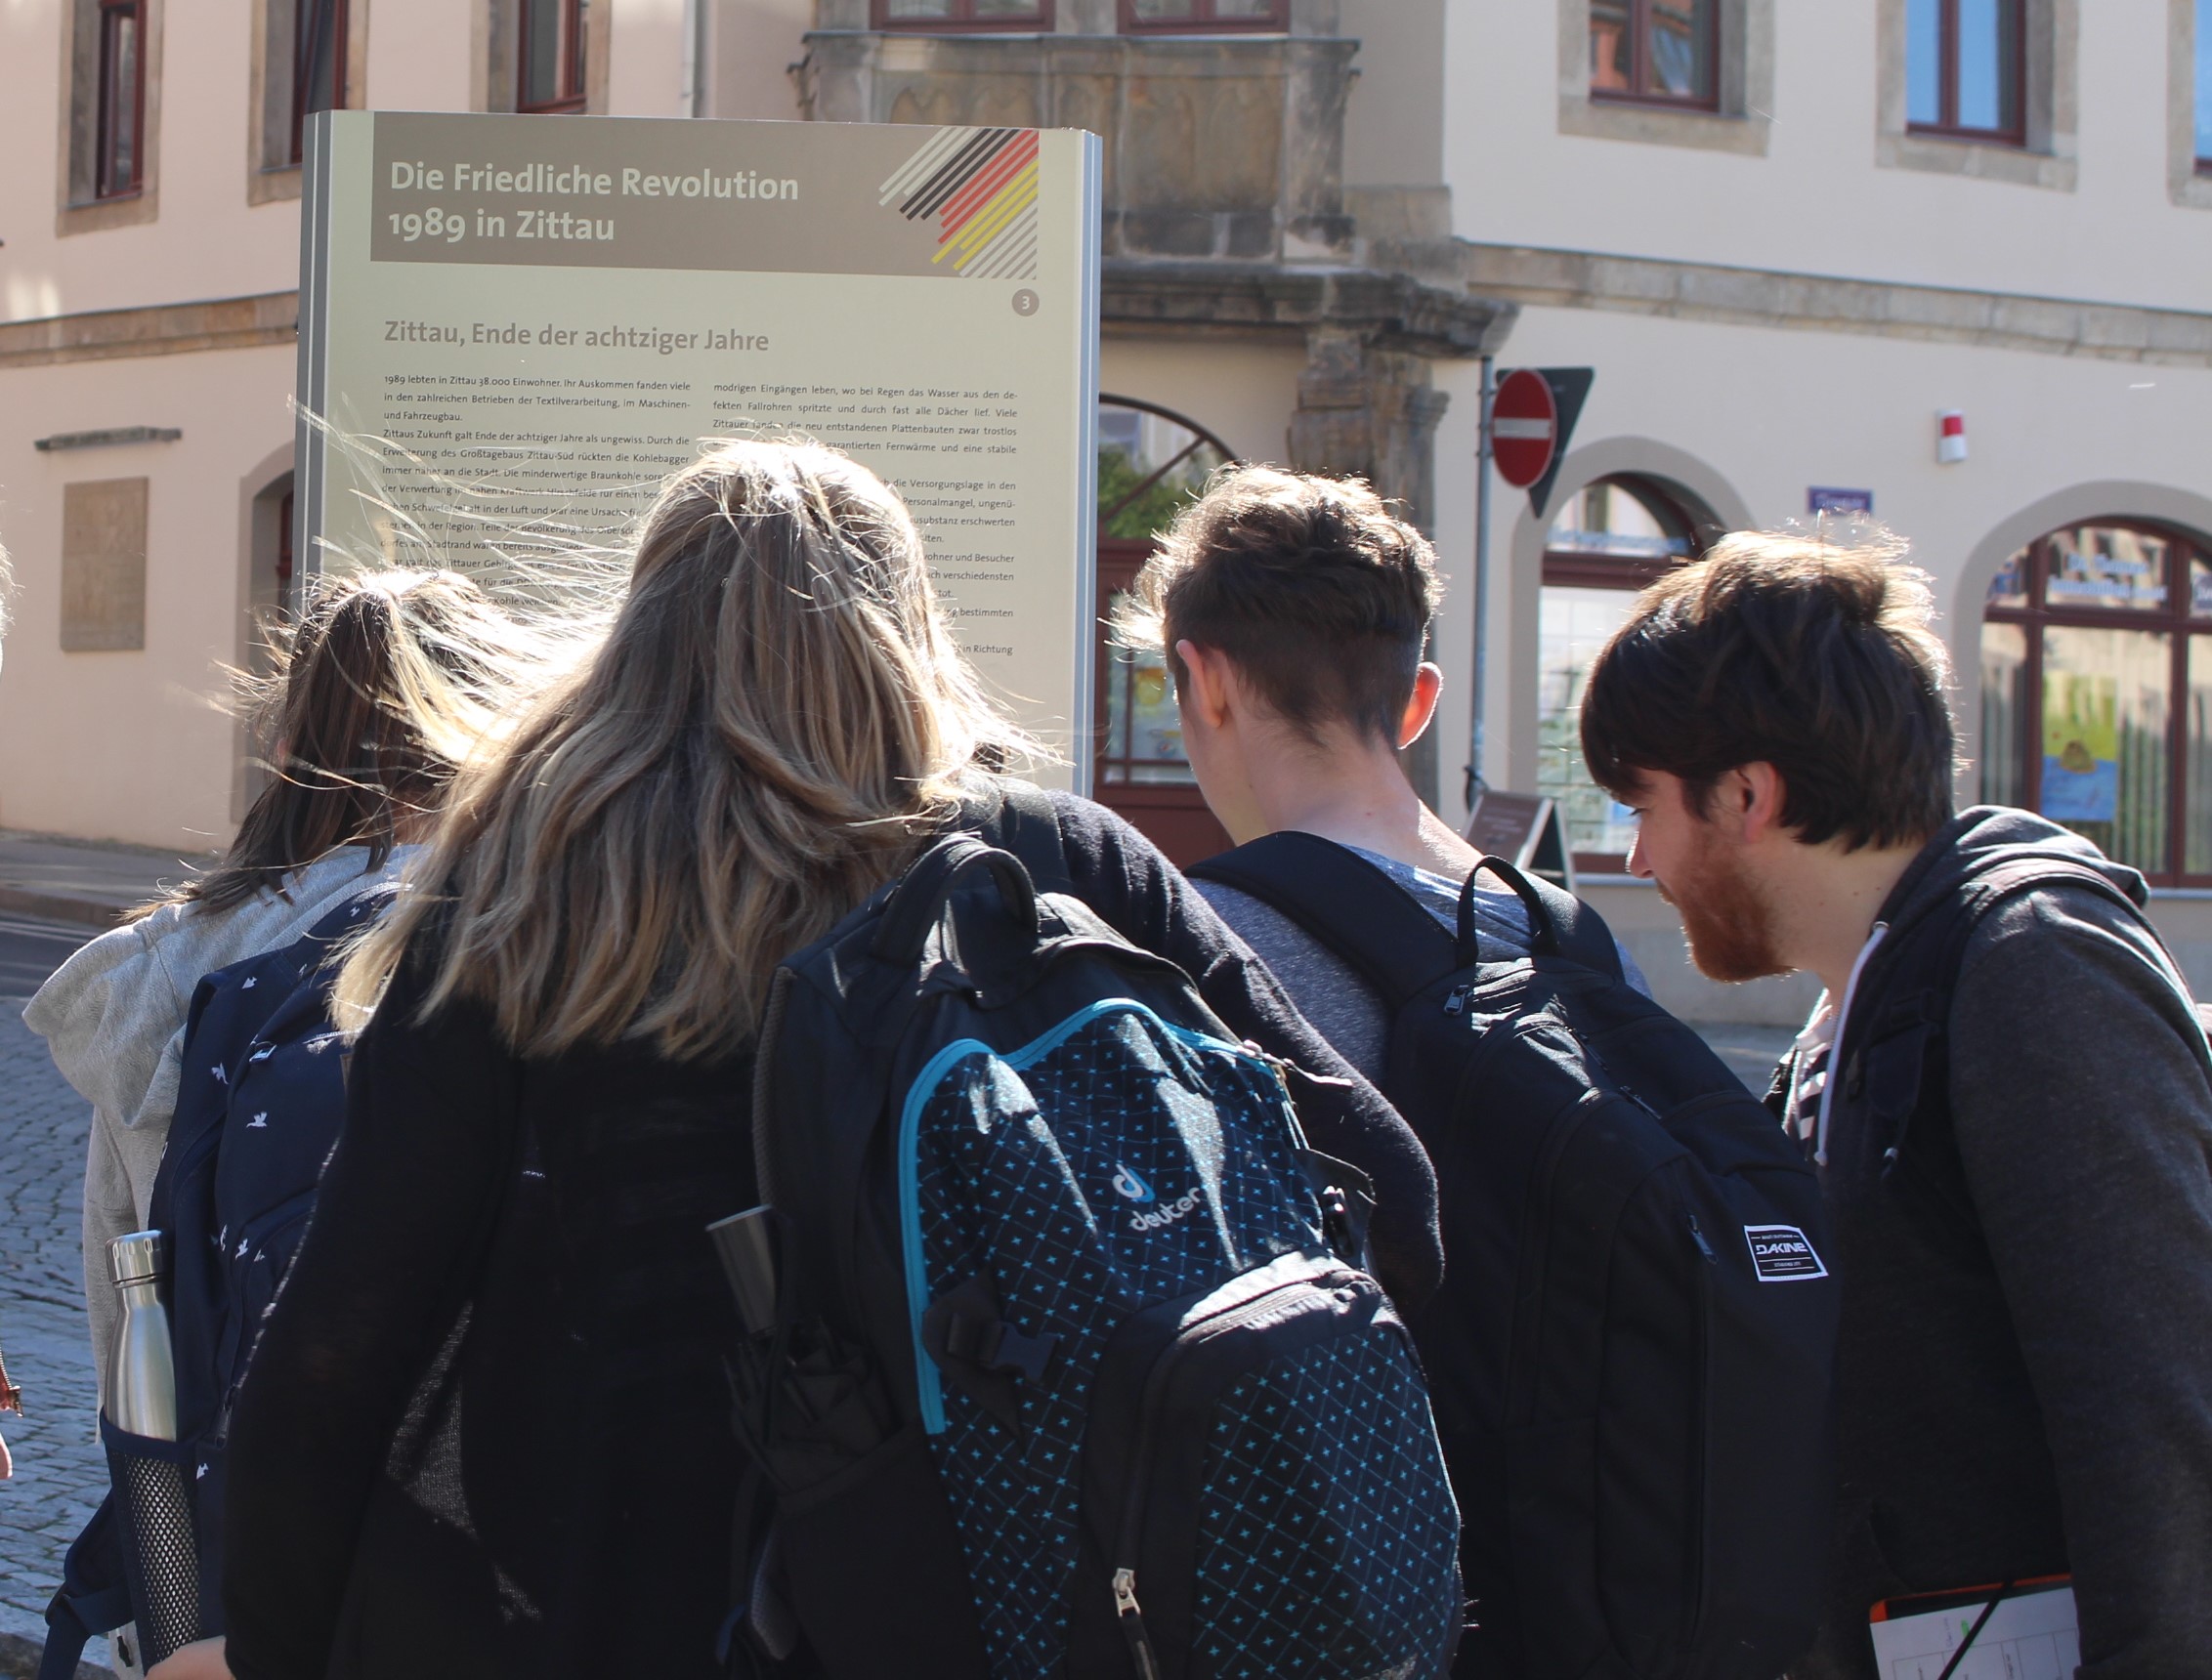 Das Bild zeigt eine Gruppe, die eine der Erinnerungsstelen in der Zittaur Innenstadt anschaut.